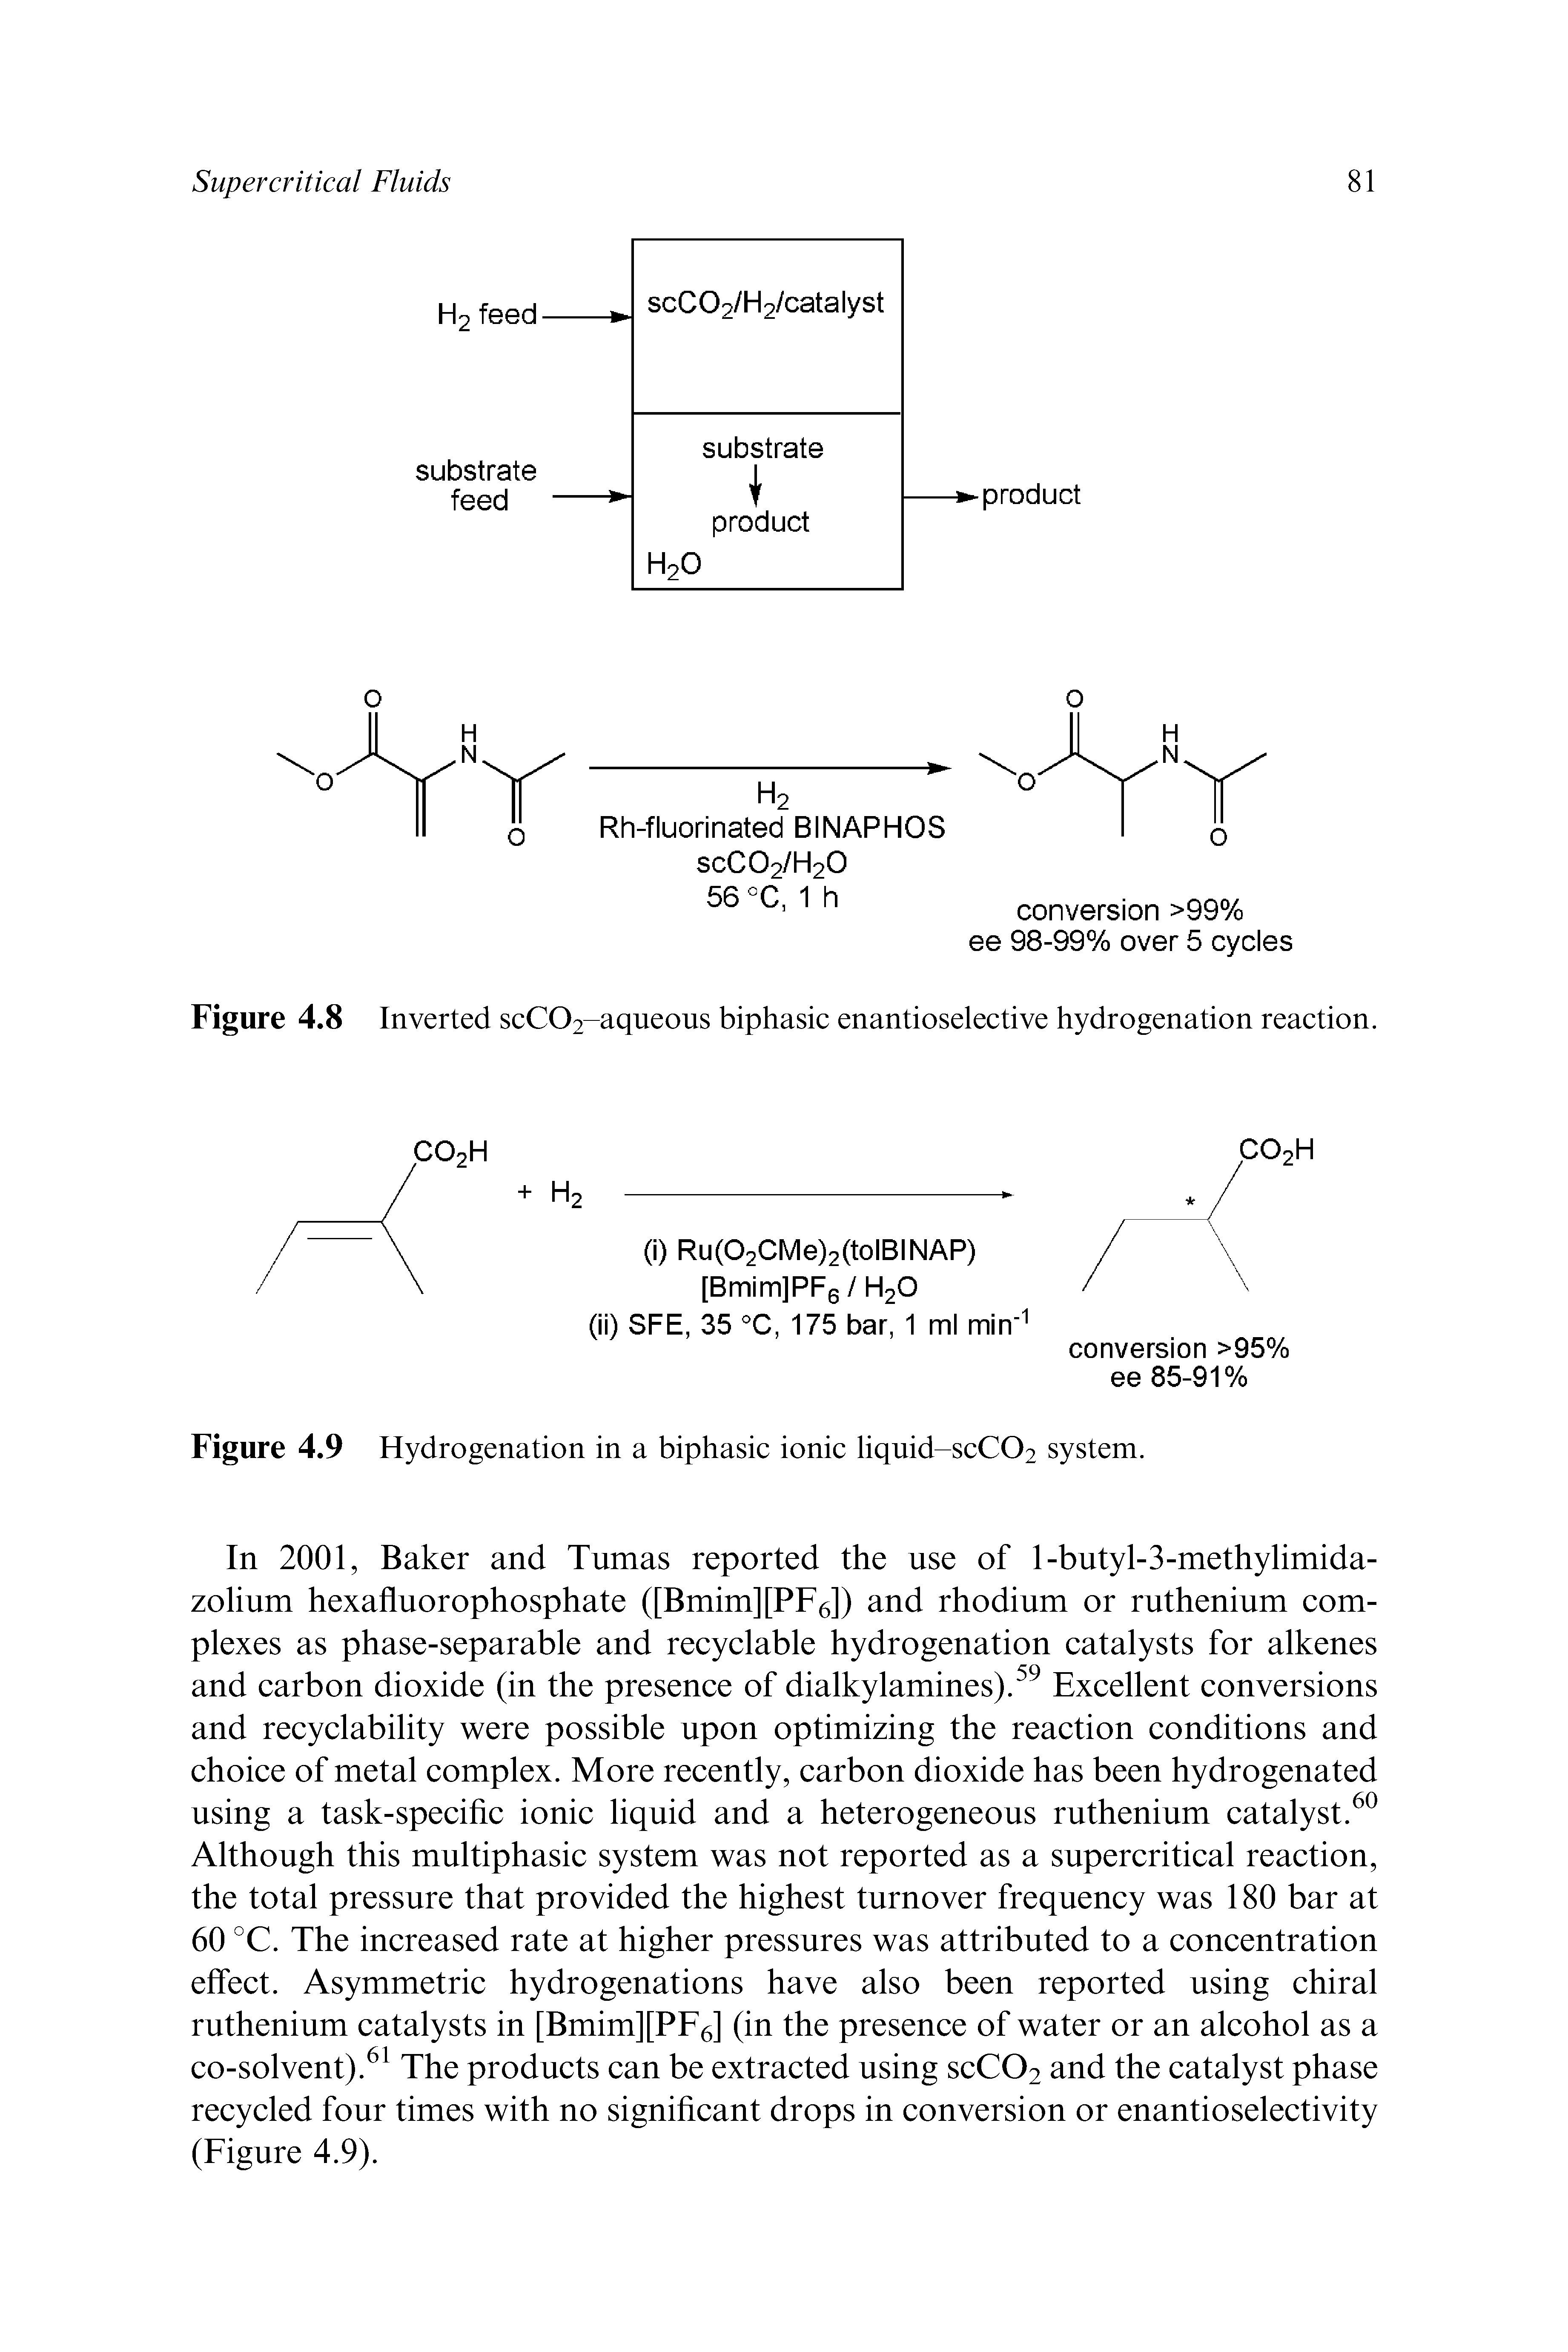 Figure 4.8 Inverted scC02-aqueous biphasic enantioselective hydrogenation reaction.